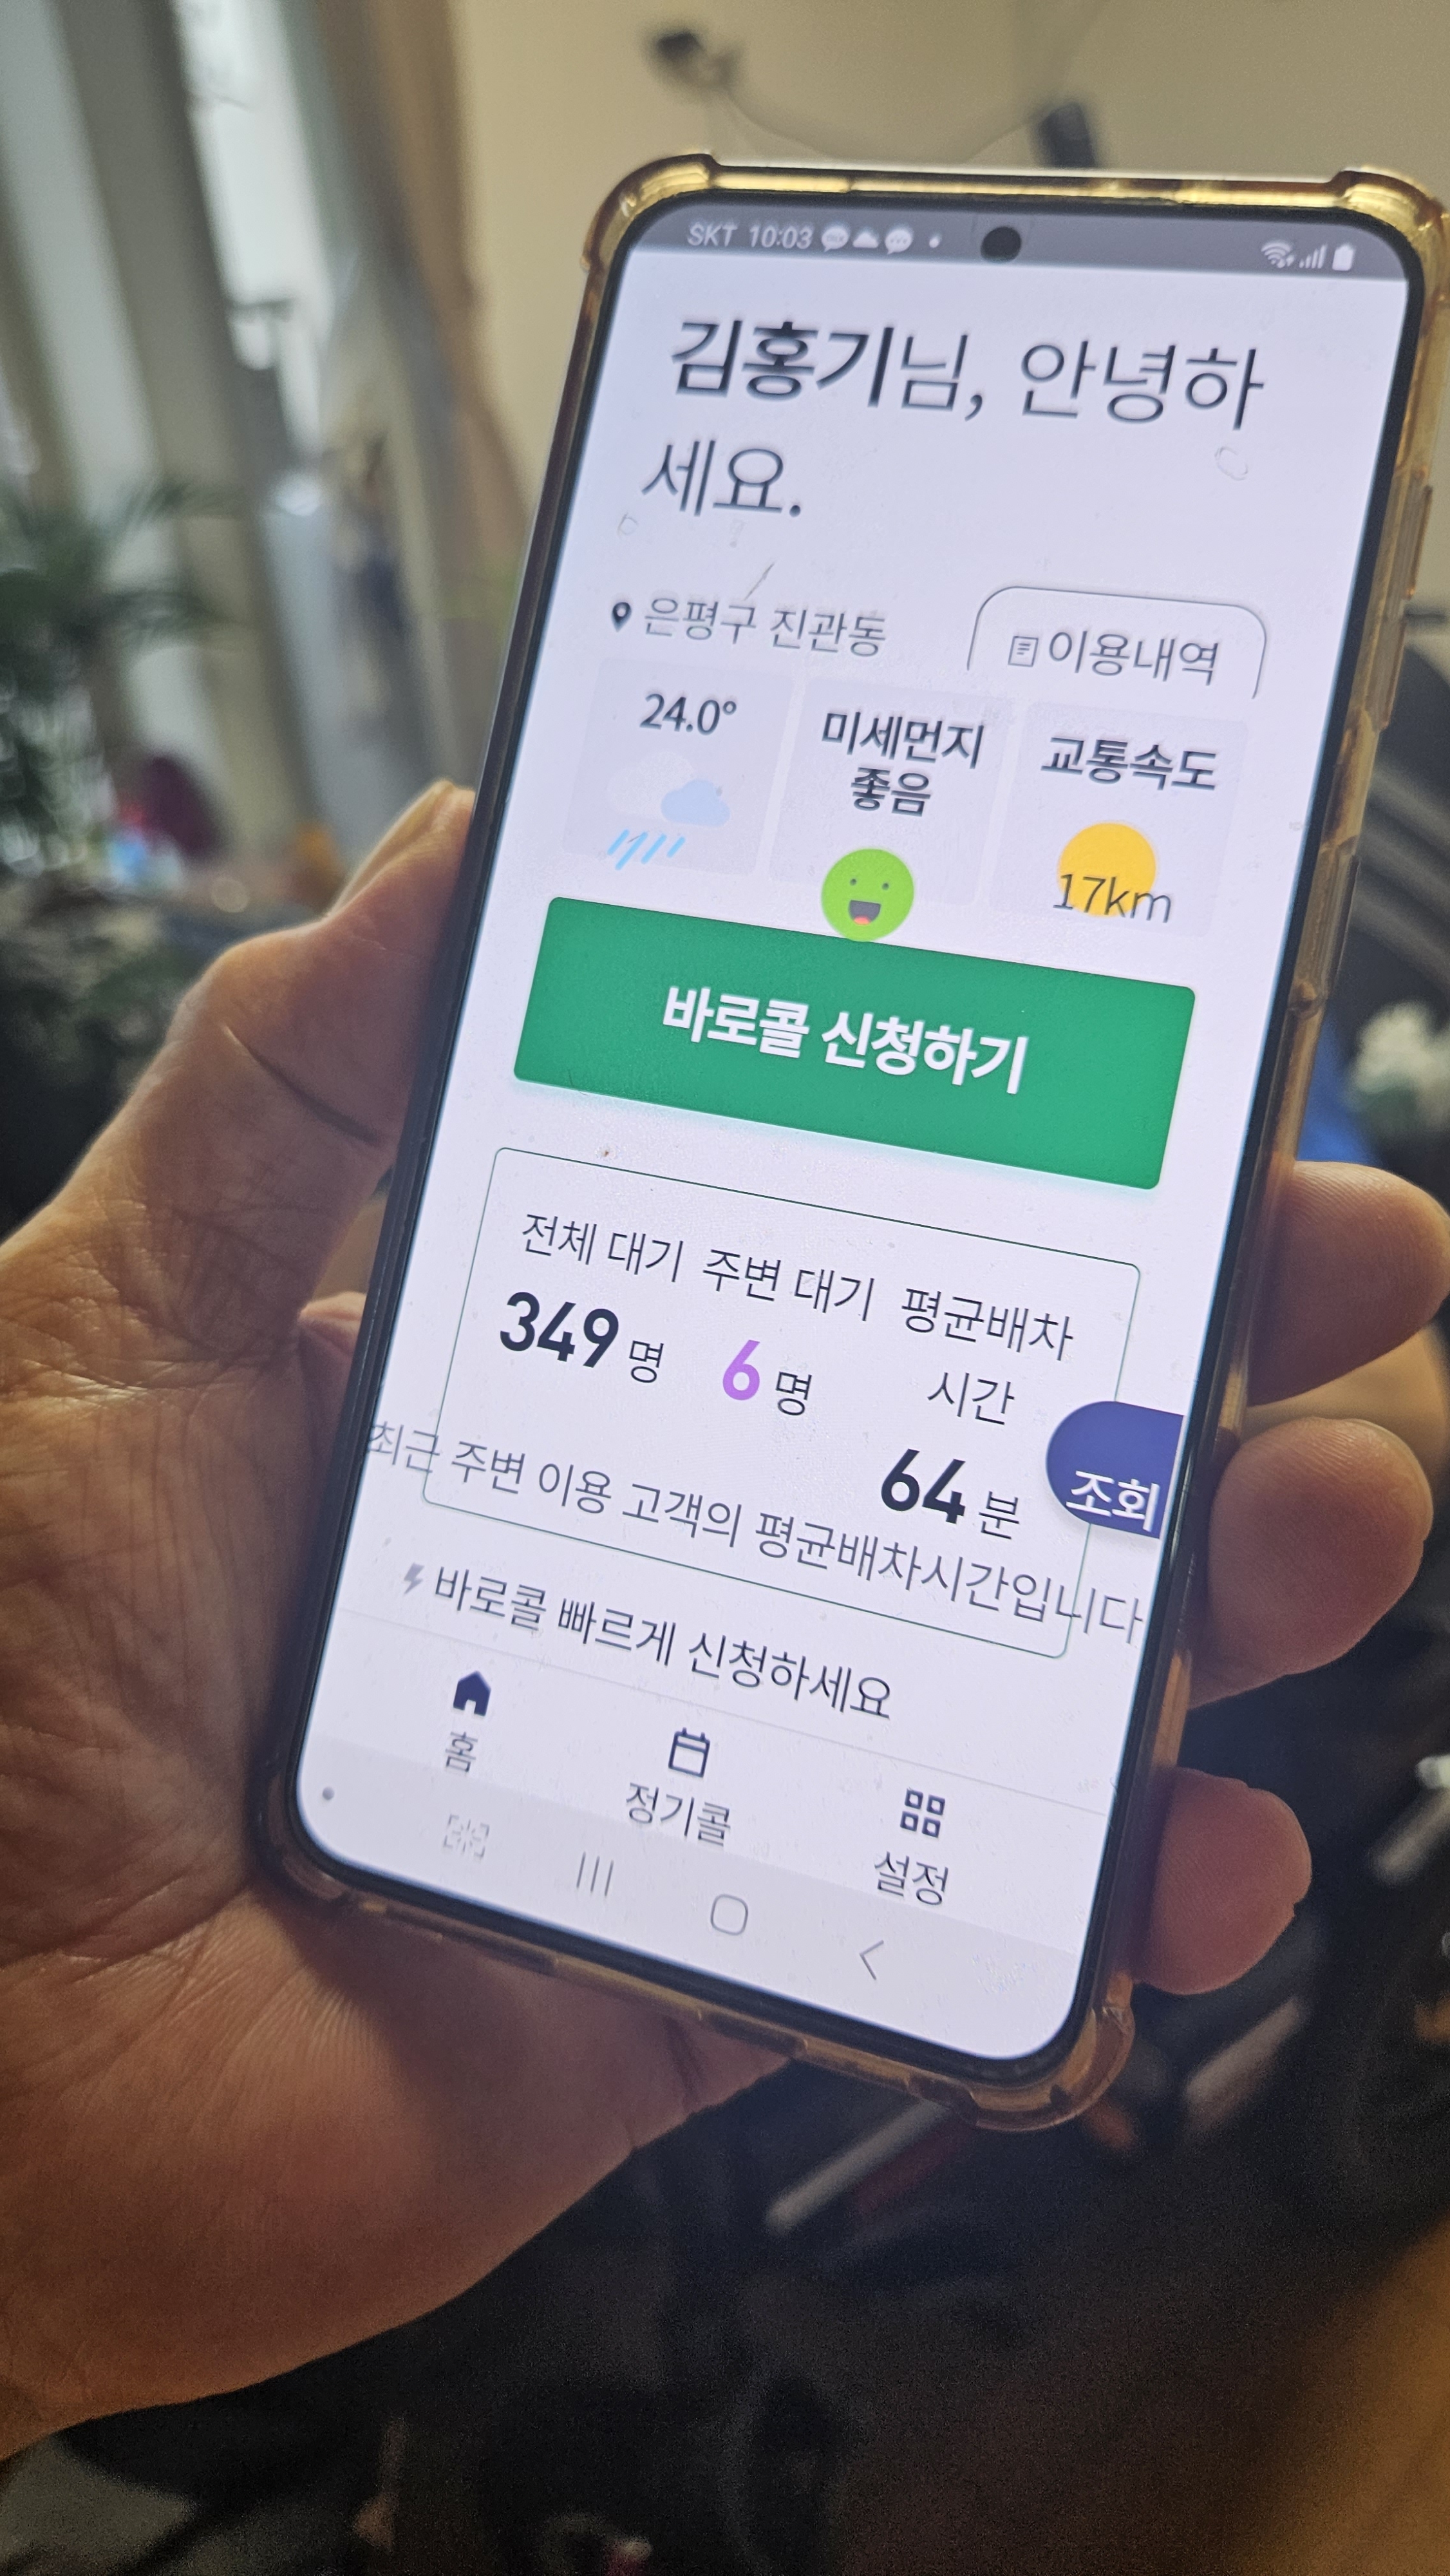 서울 은평구에 사는 장애인 김홍기씨가 호우주의보가 발효된 지난달 29일 오전 장애인 콜택시를 호출하려고 휴대전화 앱을 실행하자 주변에 6명이 대기하고 있고 배차되는 데 평균 64분이 걸린다고 나와 있다.